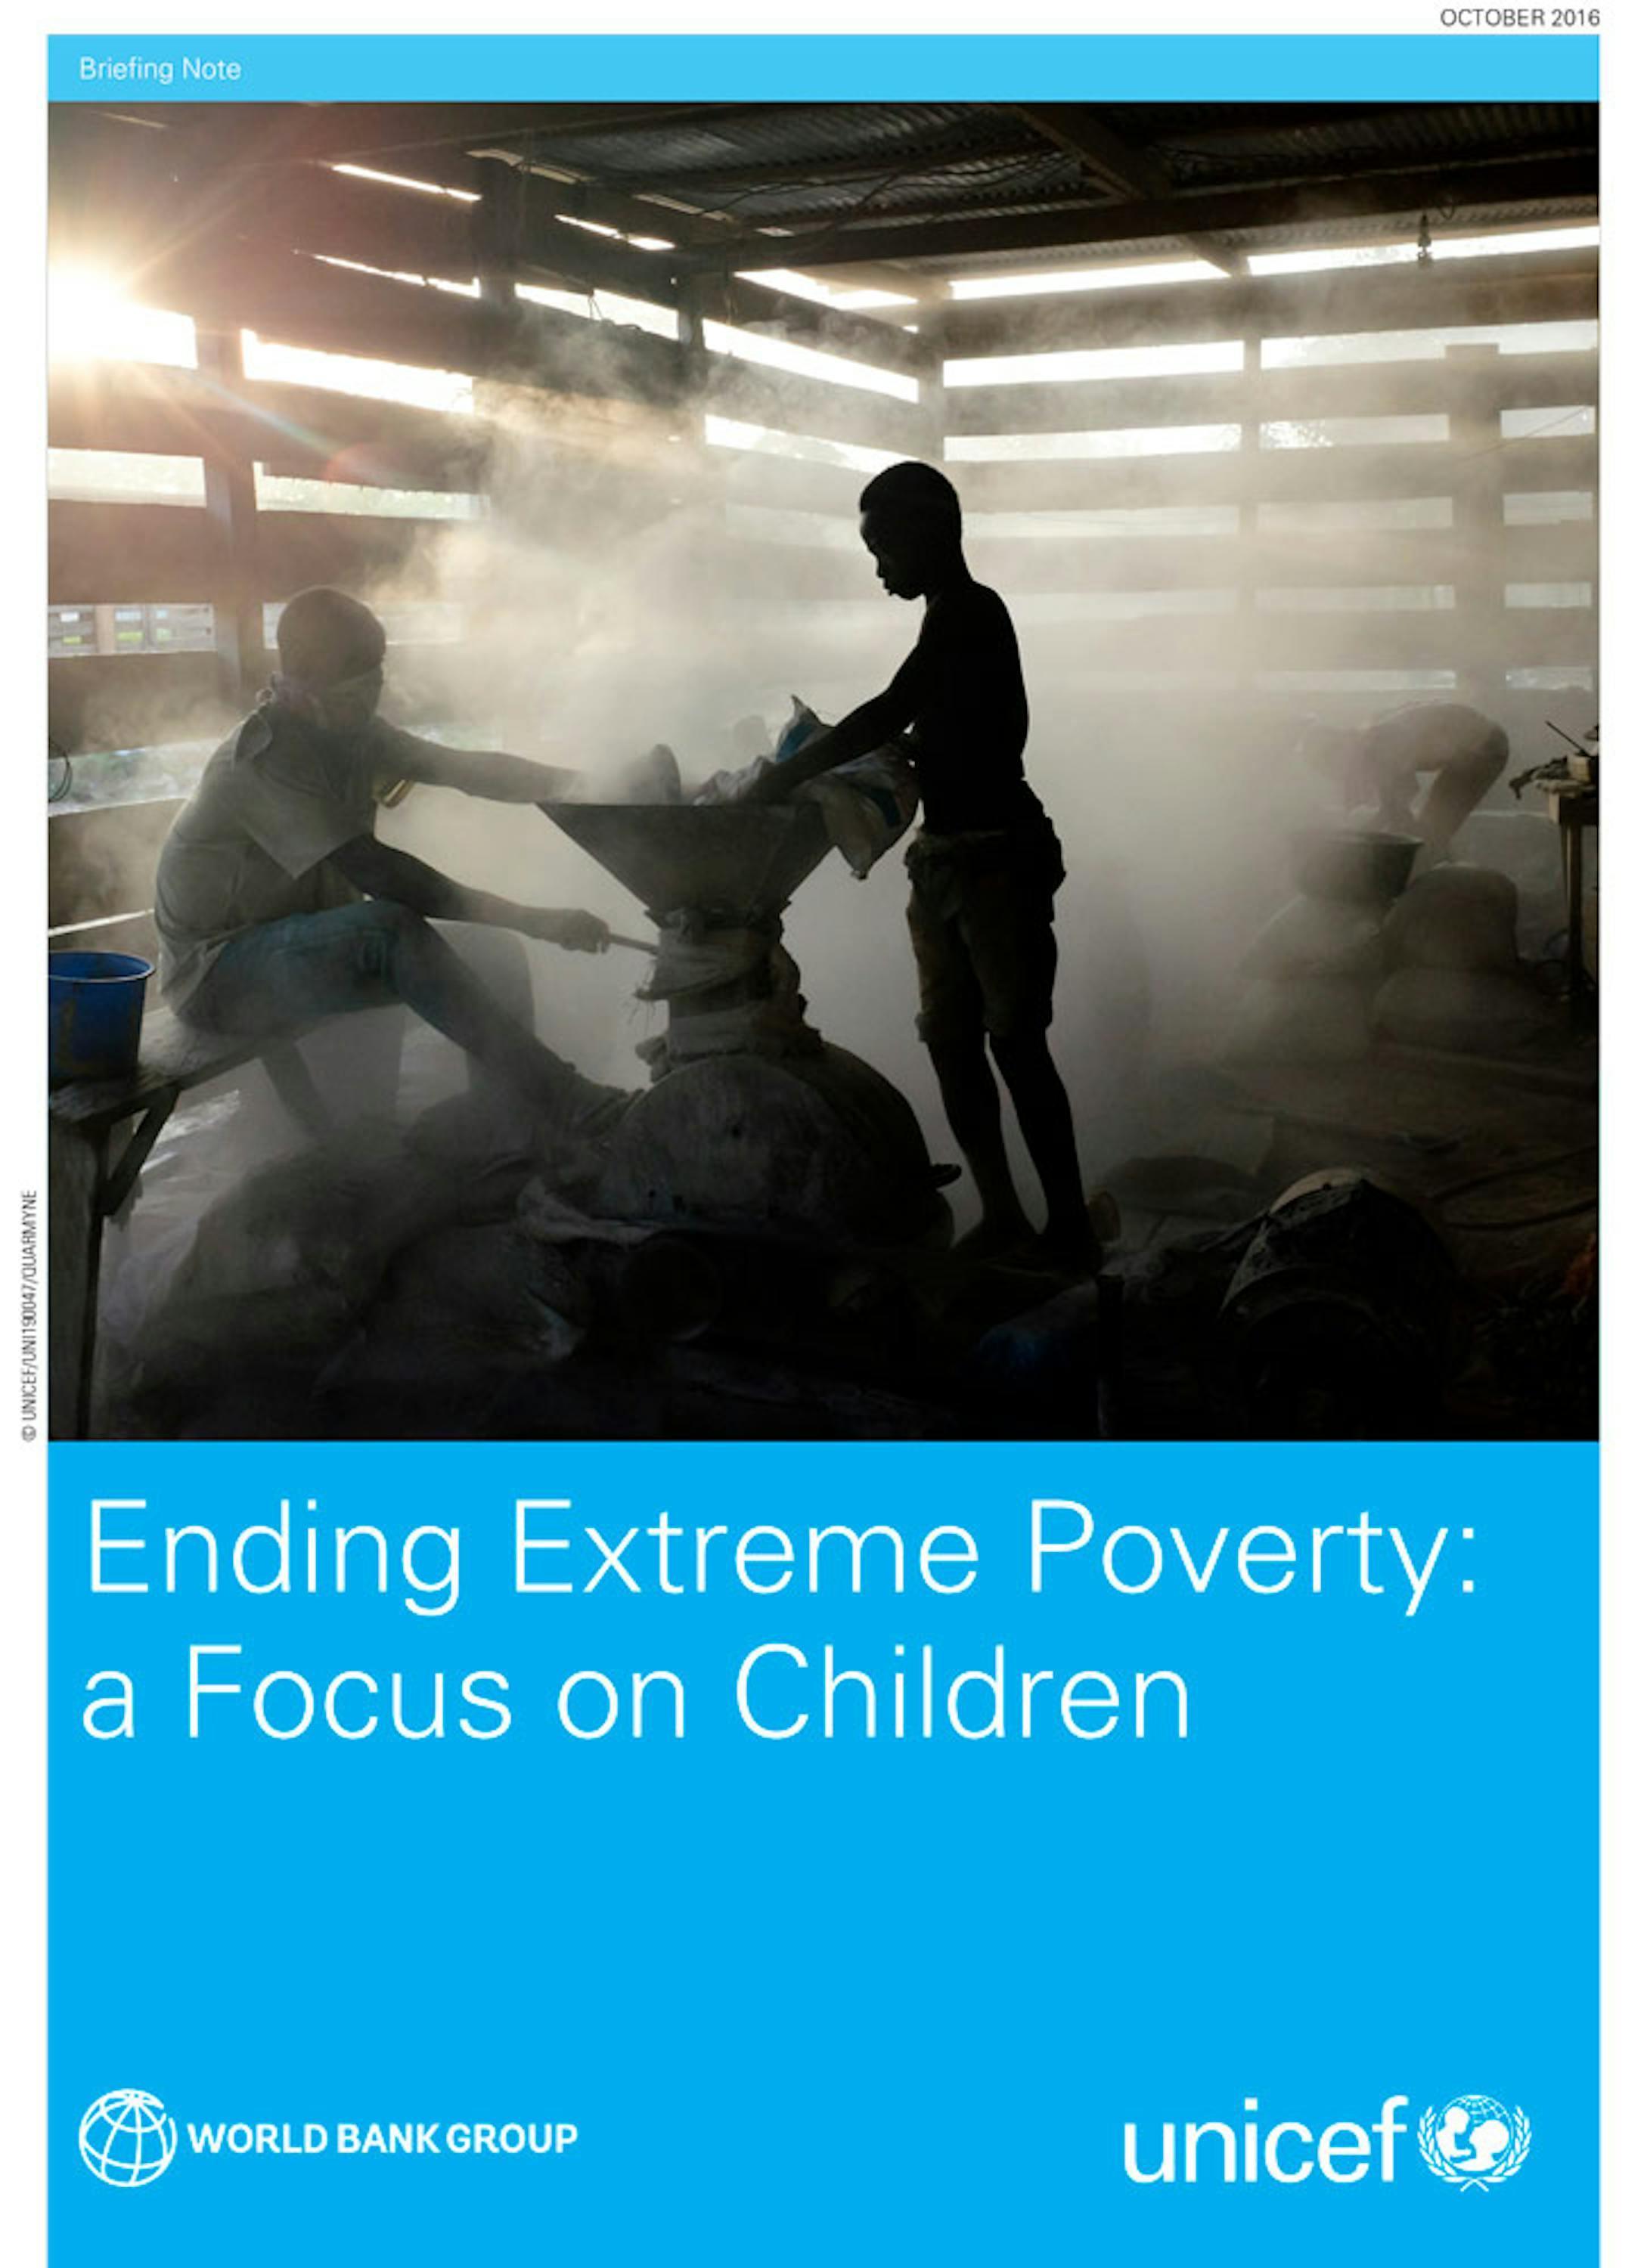 Rapporto UNICEF-Banca Mondiale, 385 milioni di bambini vivono in povertà estrema